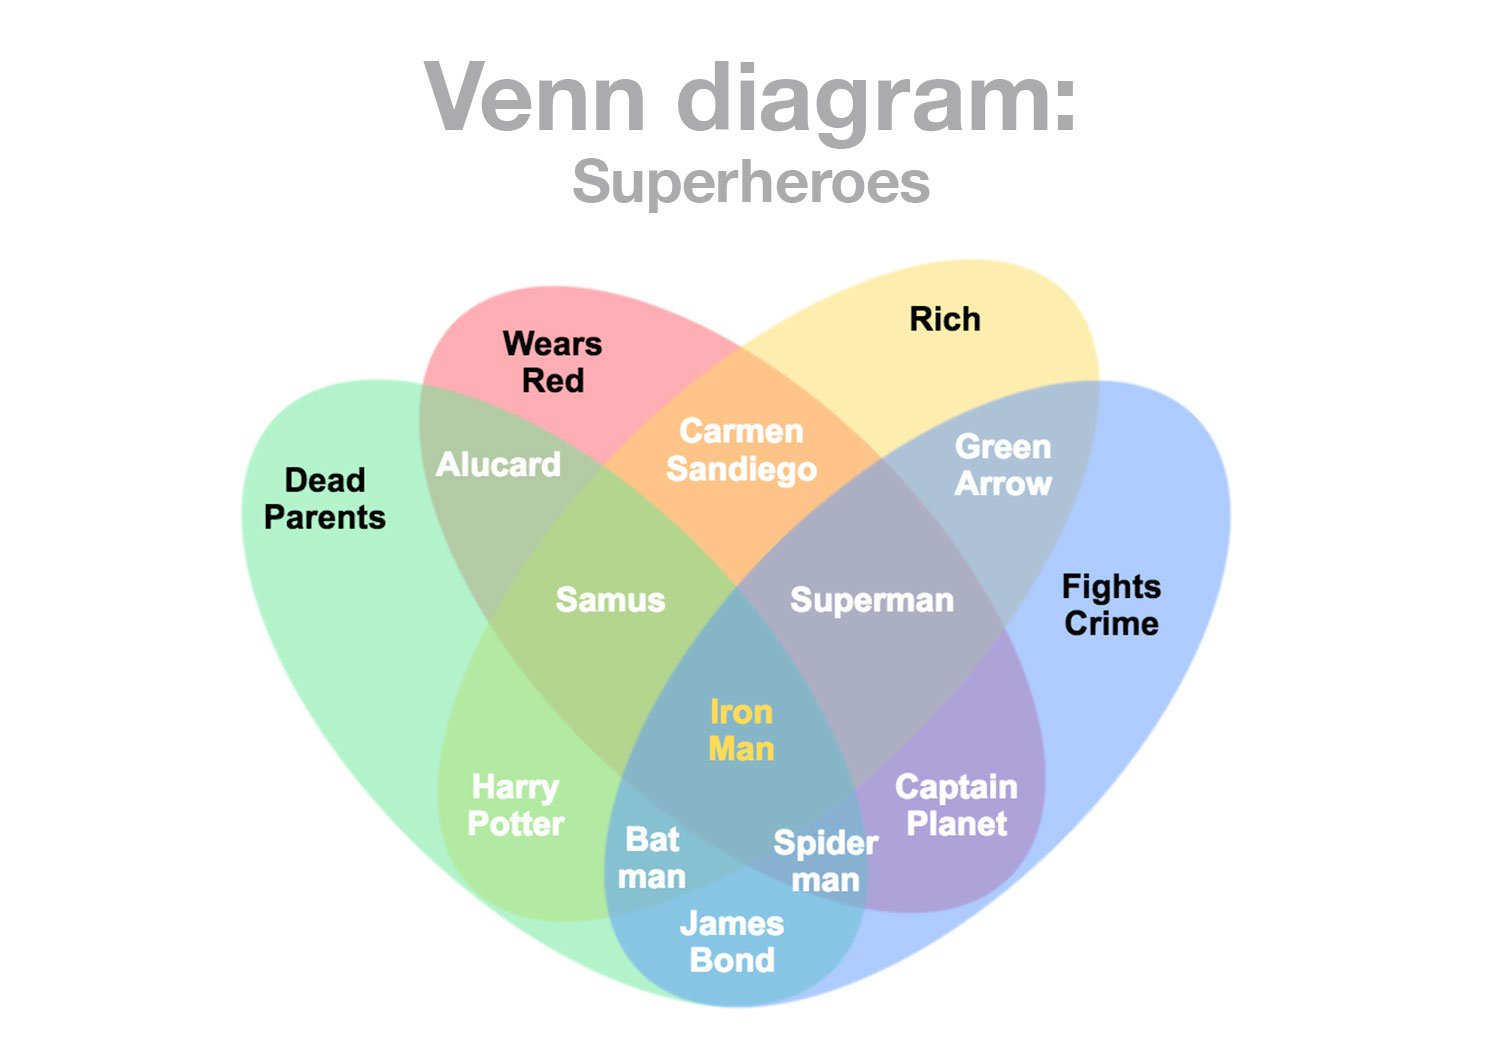 Venn Diagram Examples Venn Diagram Maker How To Make Venn Diagrams Online Gliffy